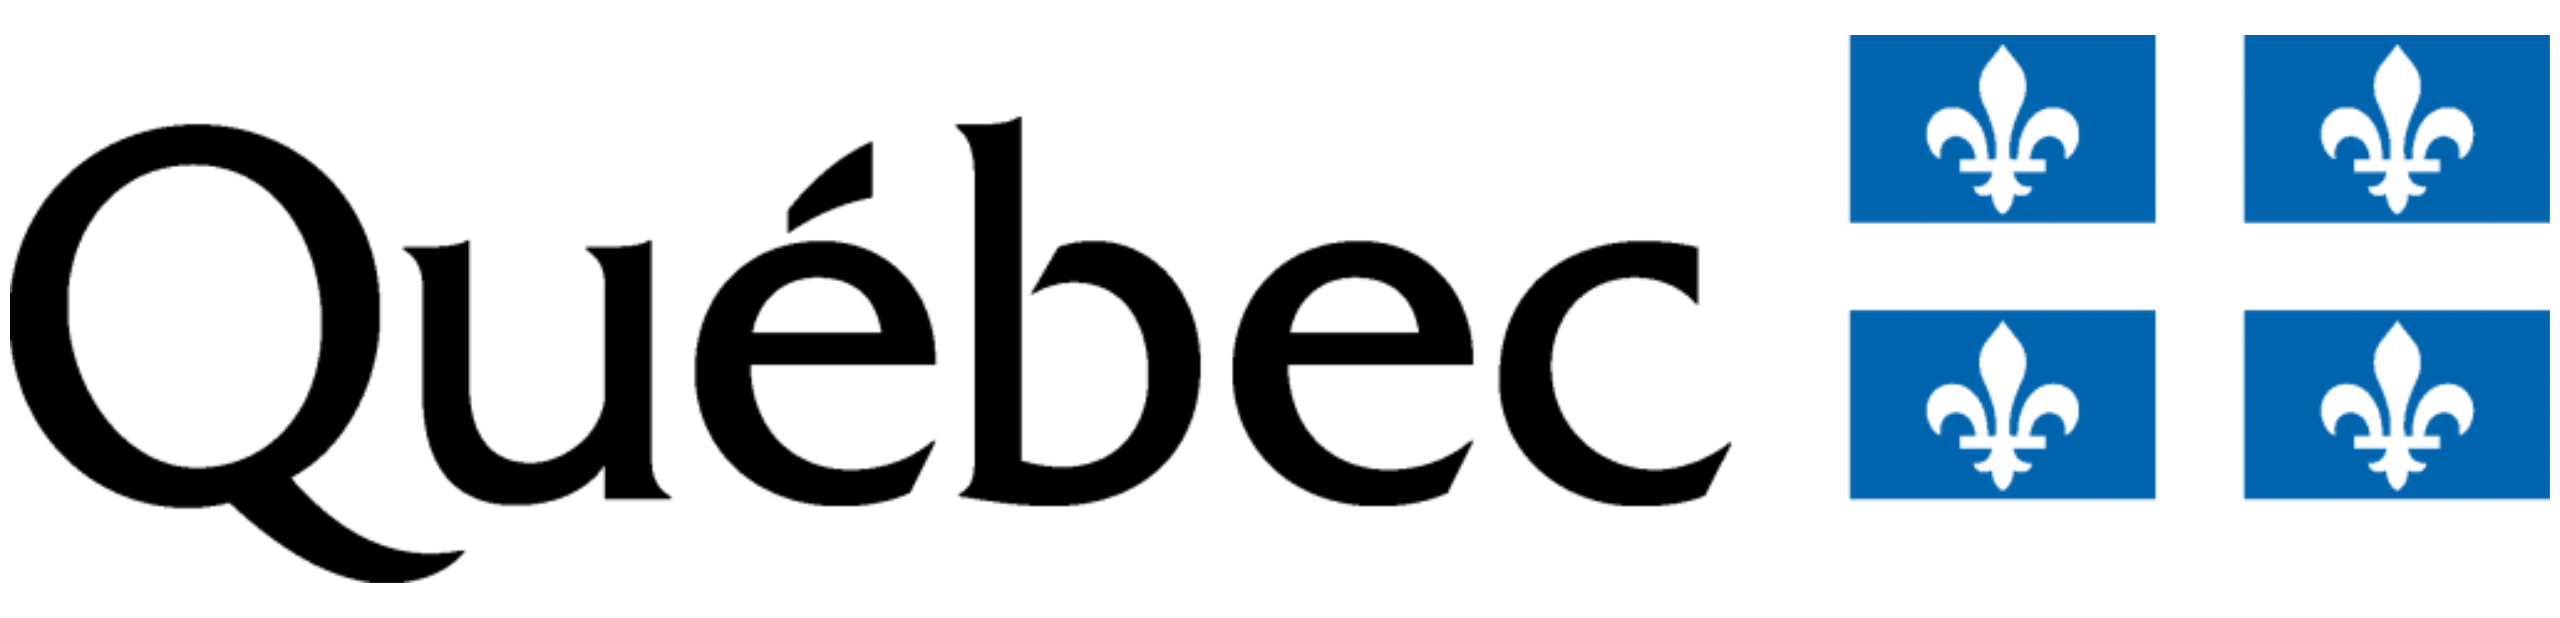 Québec_Logo